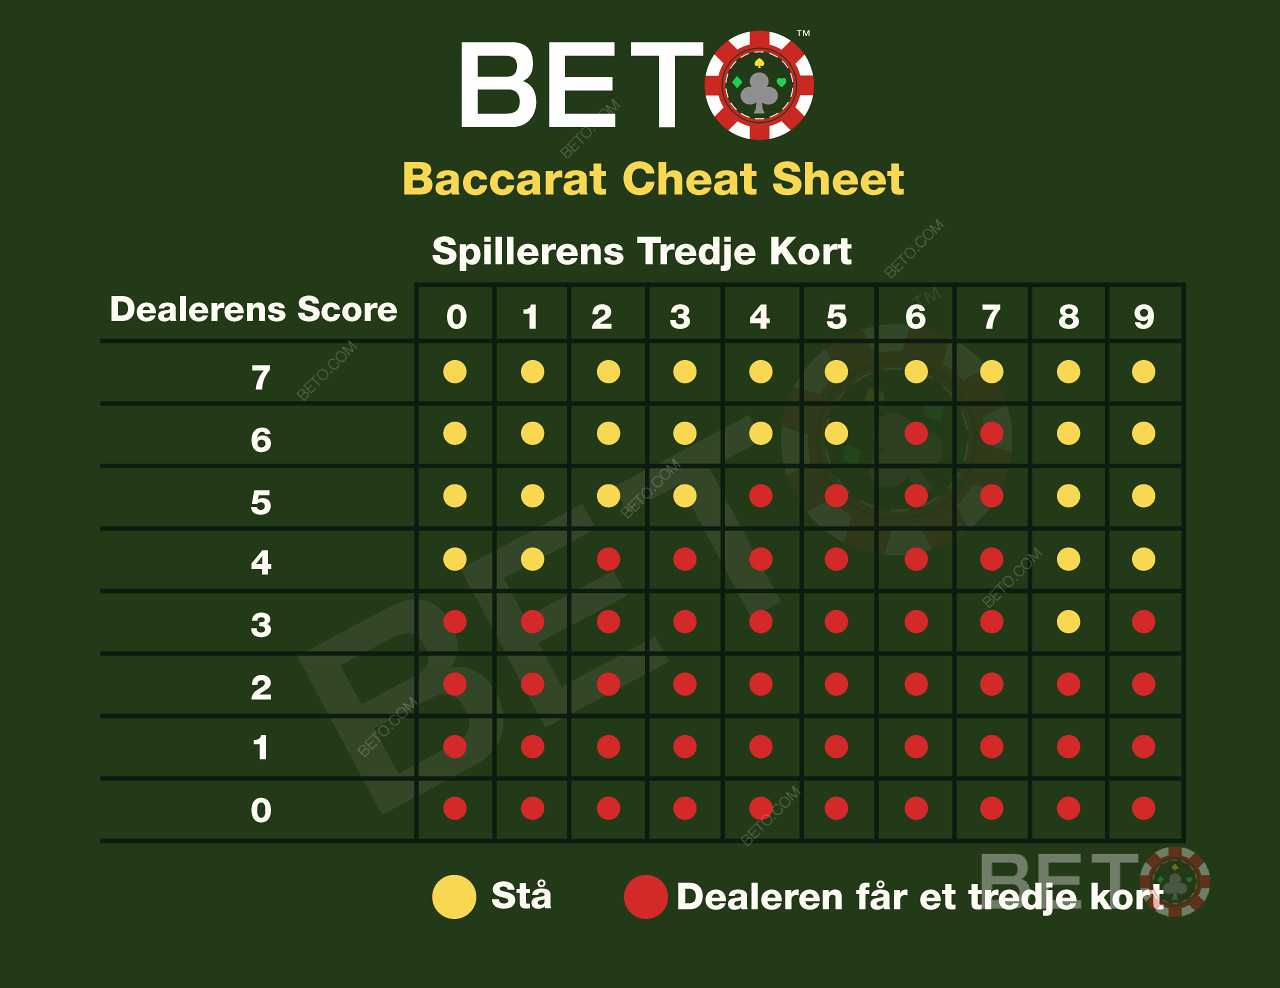 Baccarat cheat sheet og skema over reglerne